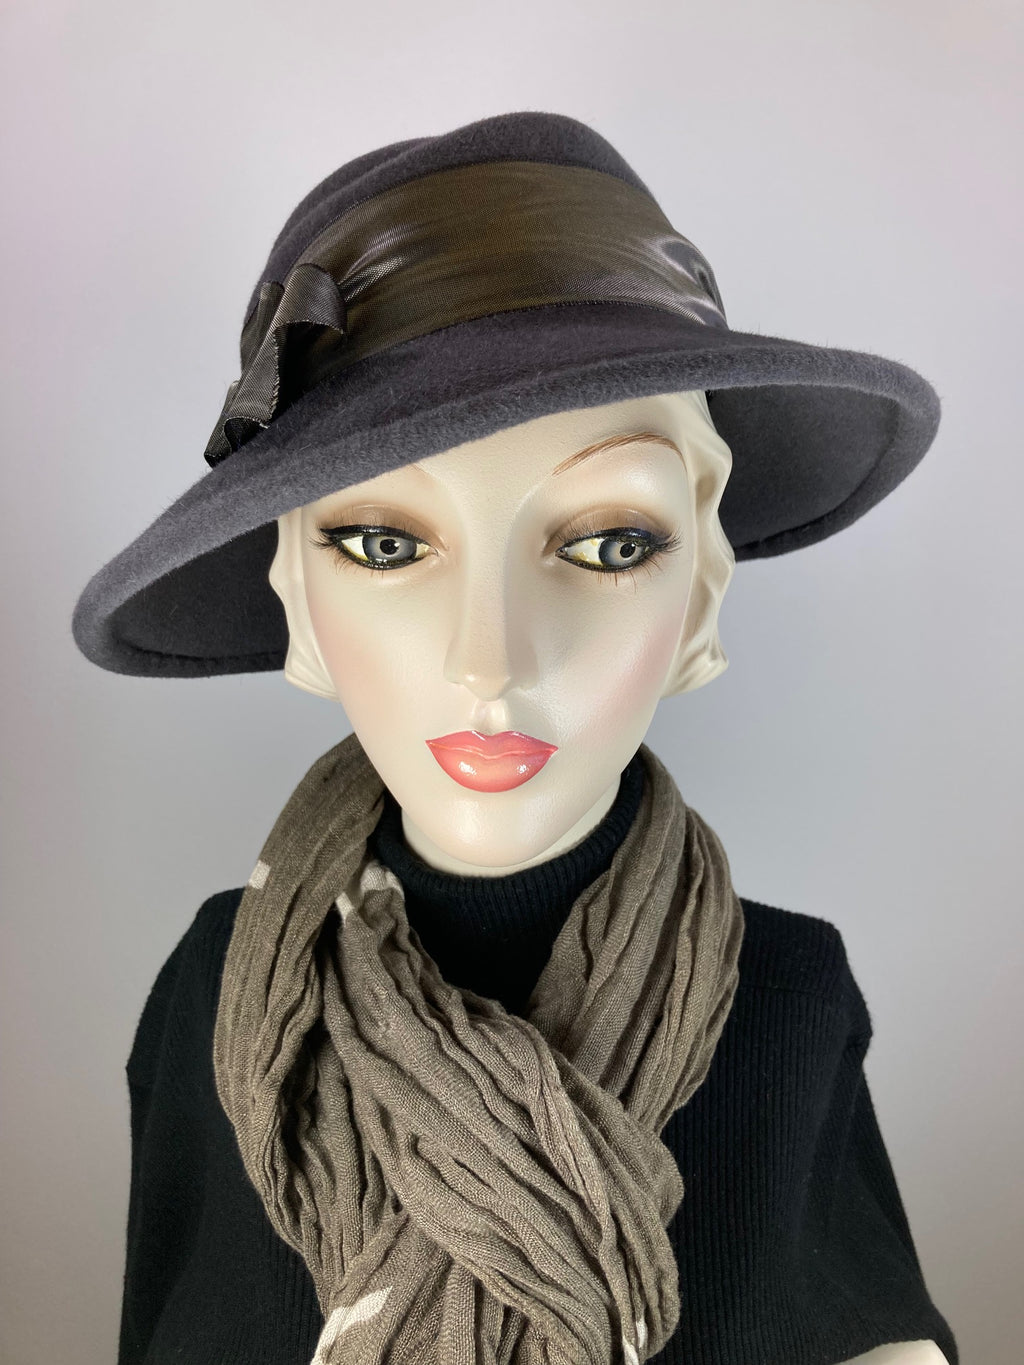 Women's Menswear Warm Wool Felt Hat in Gray for Winter, Ladies Gray Winter Fedora Hat, What a Great Hat.